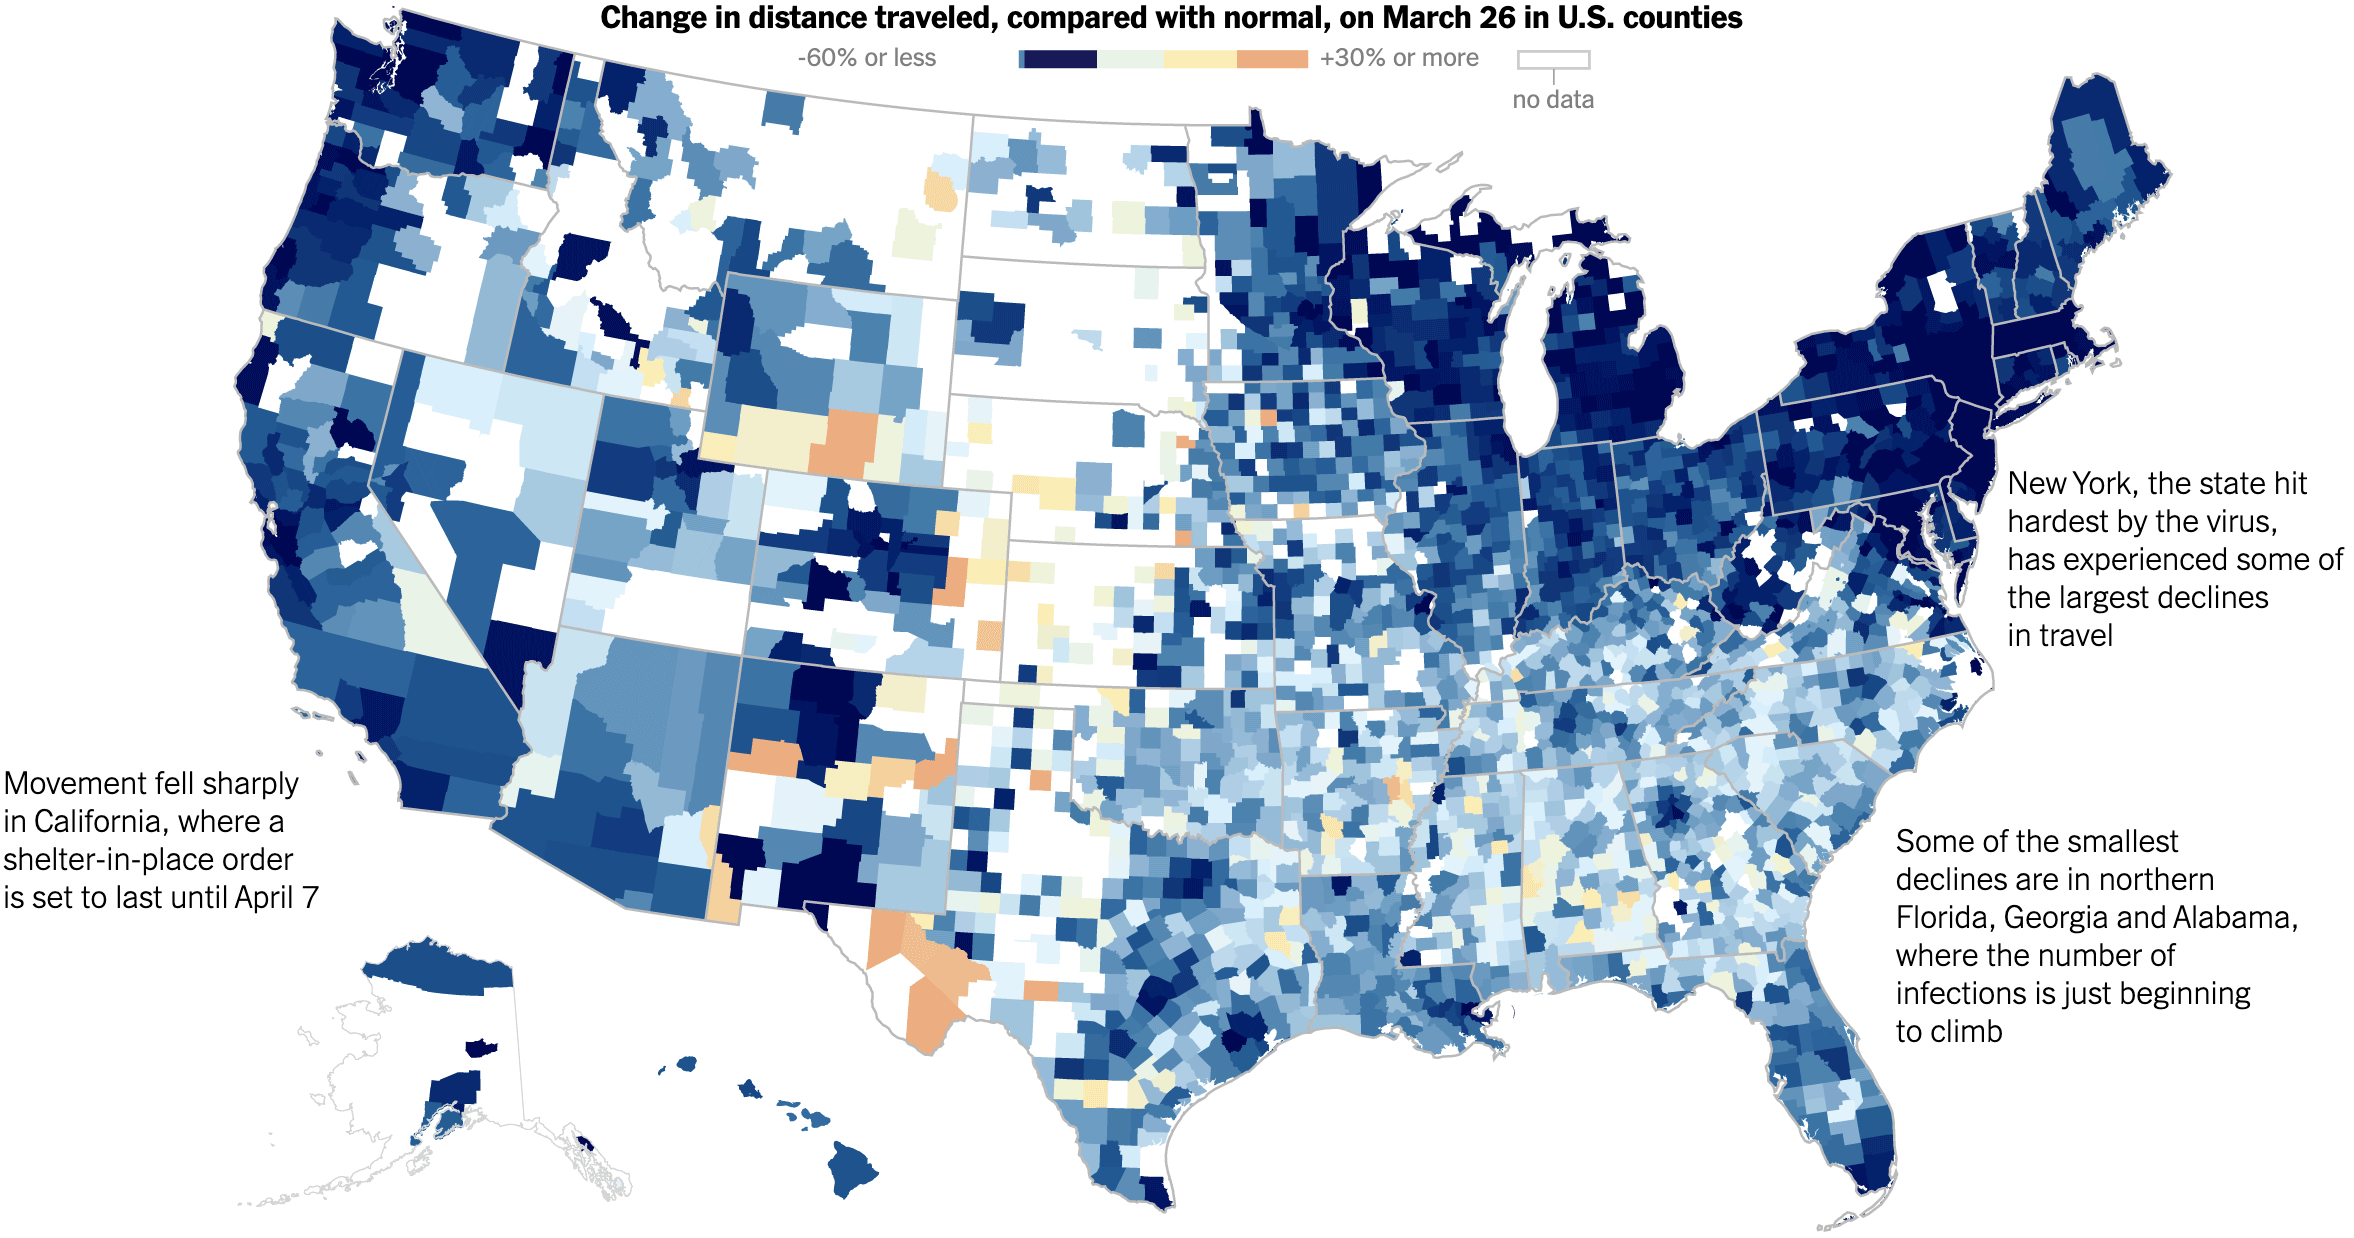 Разница в расстоянии, на которое жители разных округов США путешествовали 26 марта 2020 года, по сравнению с обычными показателями. Темно-синий и синий — снижение на 60% или еще сильнее, бежевый и розоватый — рост на 30% относительно обычных показателей. Источник: The New York Times